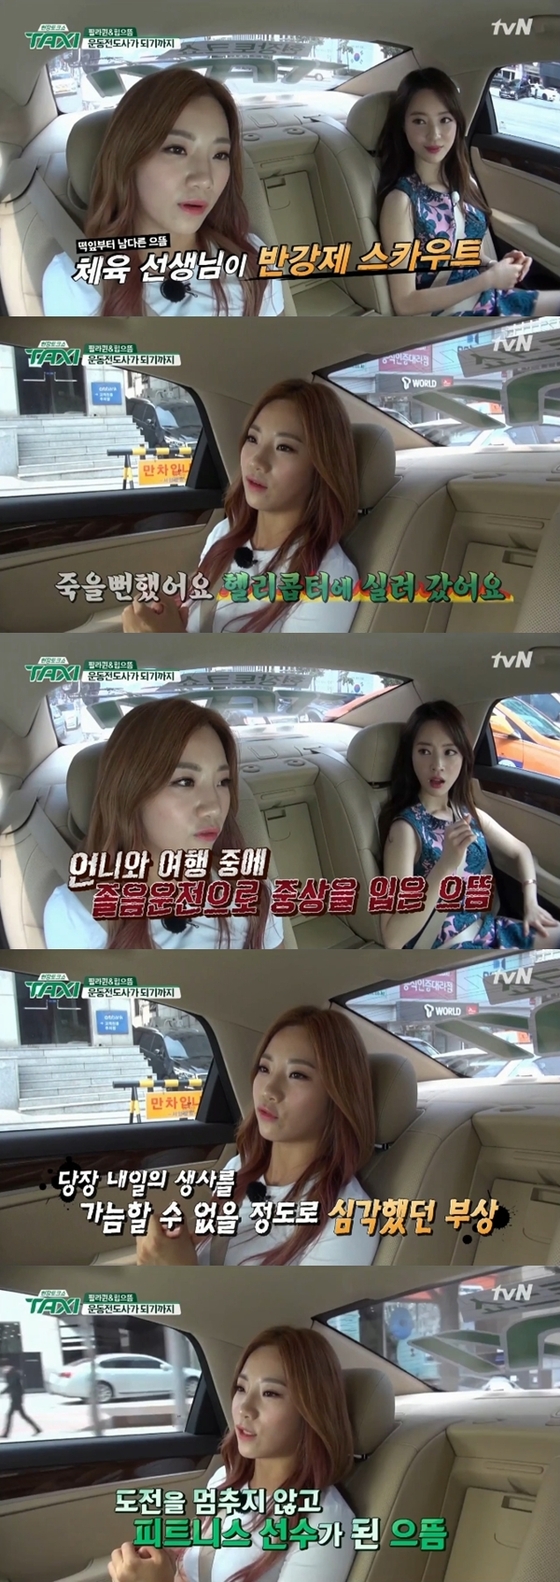 심으뜸이 과거 있었던 교통사고에 대해 말했다. © News1star / tvN '현장 토크쇼-택시' 캡처